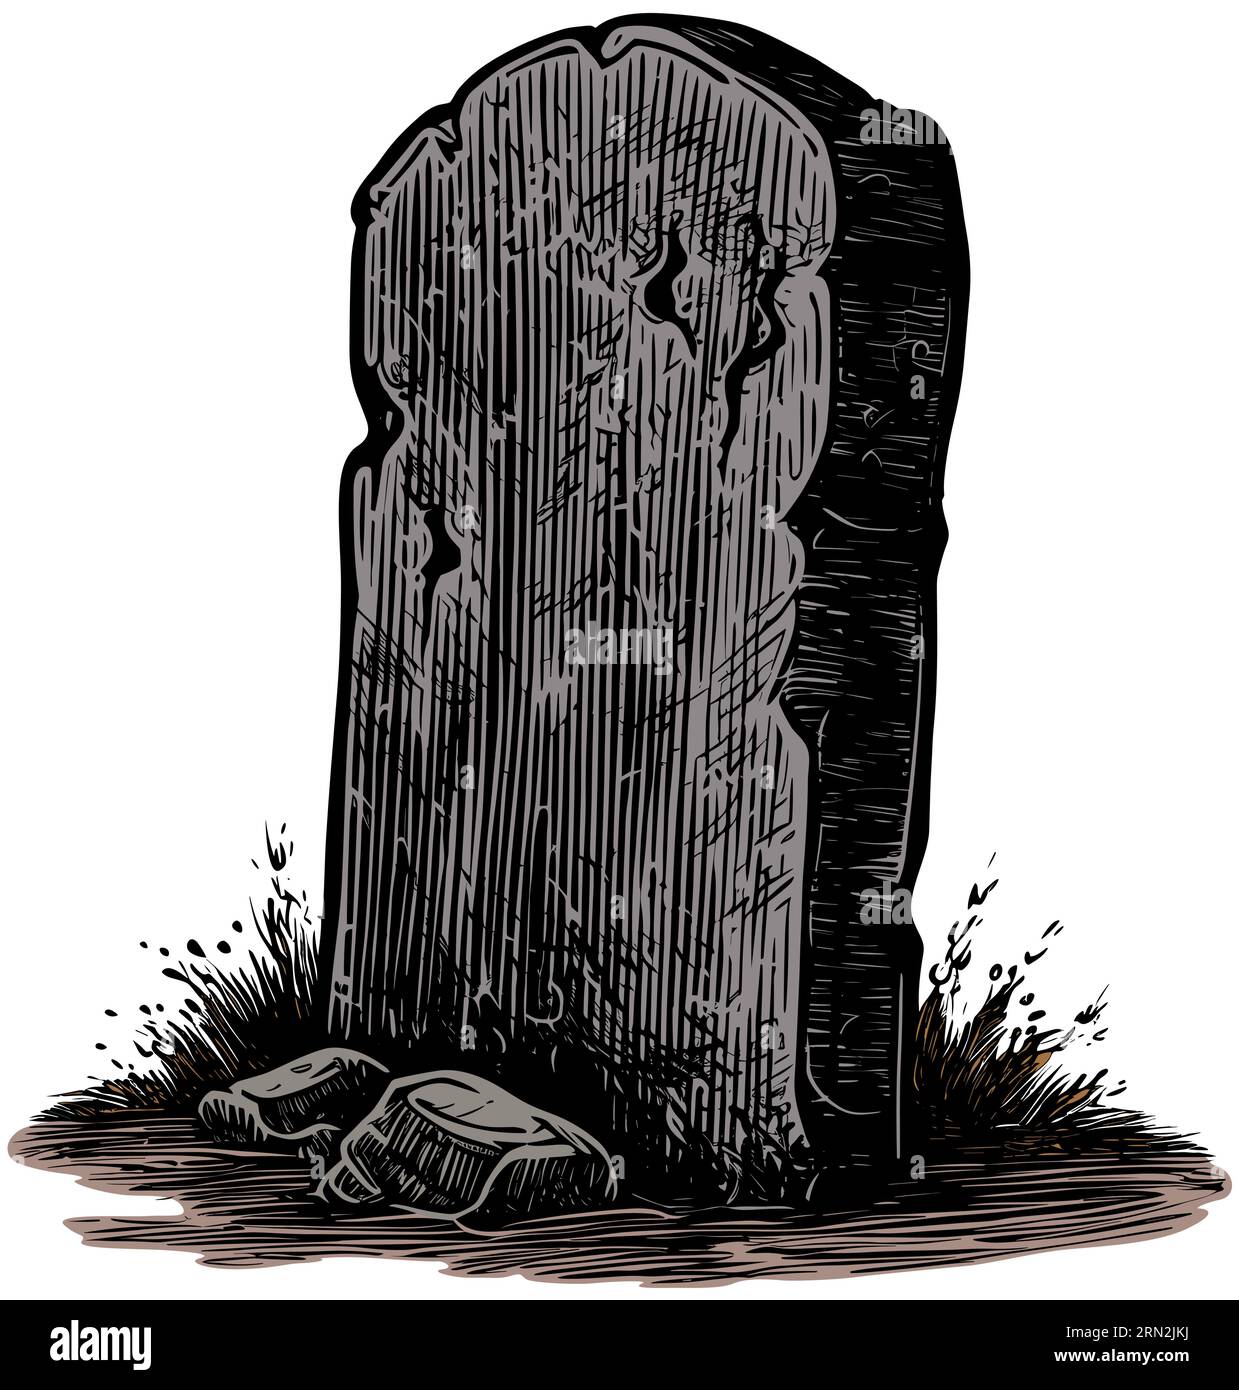 Holzschnitt-Illustration eines gruseligen Grabsteins isoliert auf weißem Hintergrund. Stock Vektor